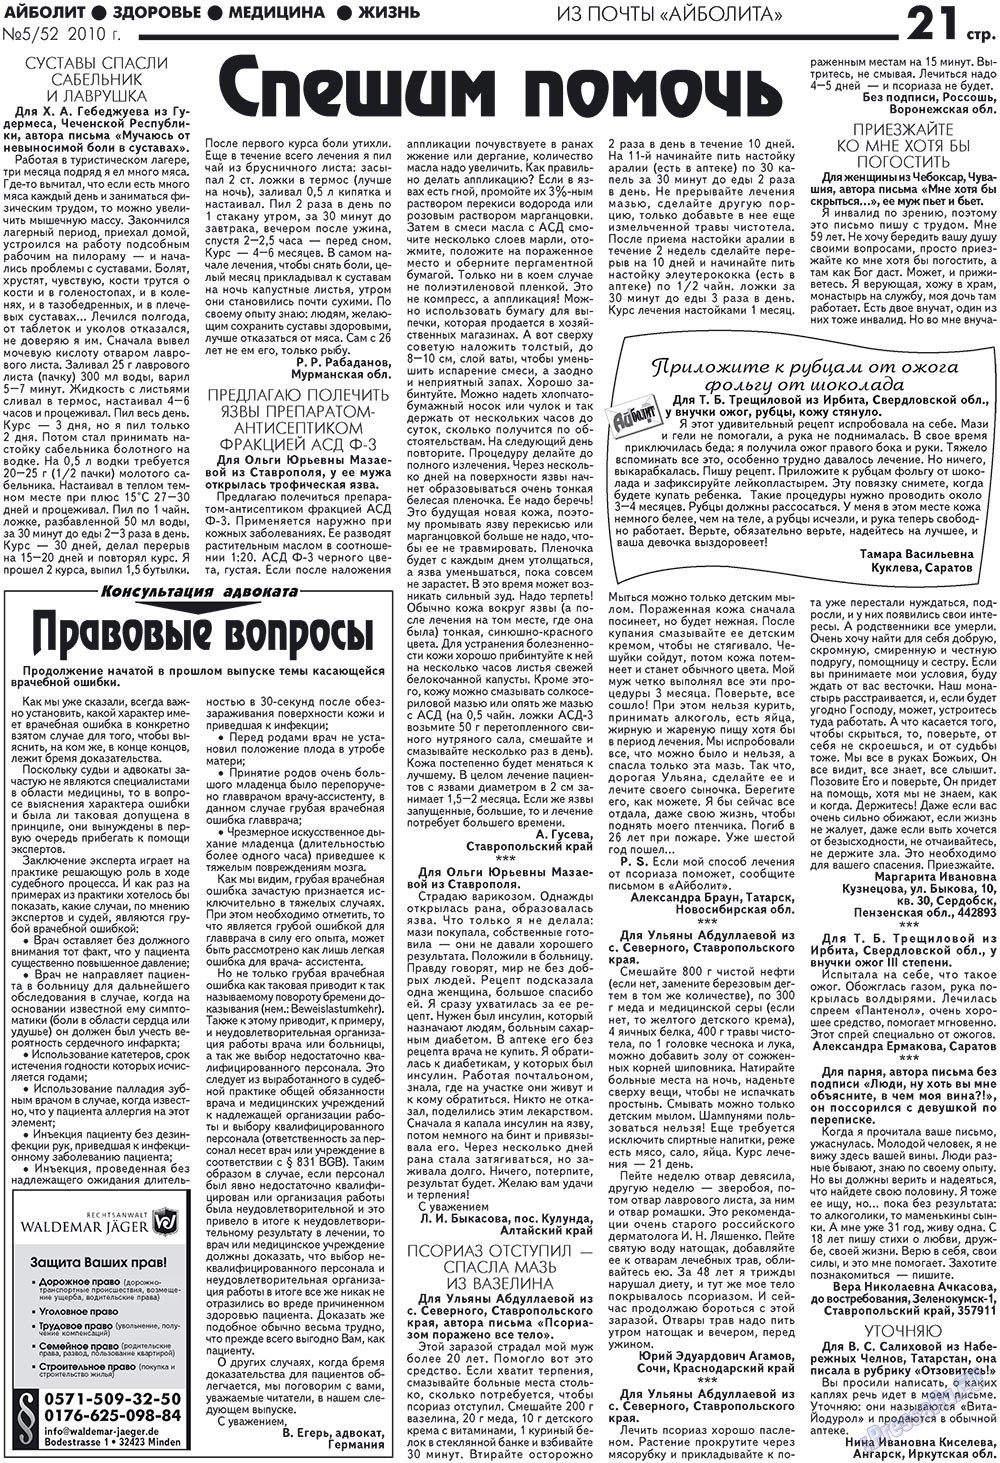 АйБолит, газета. 2010 №5 стр.21